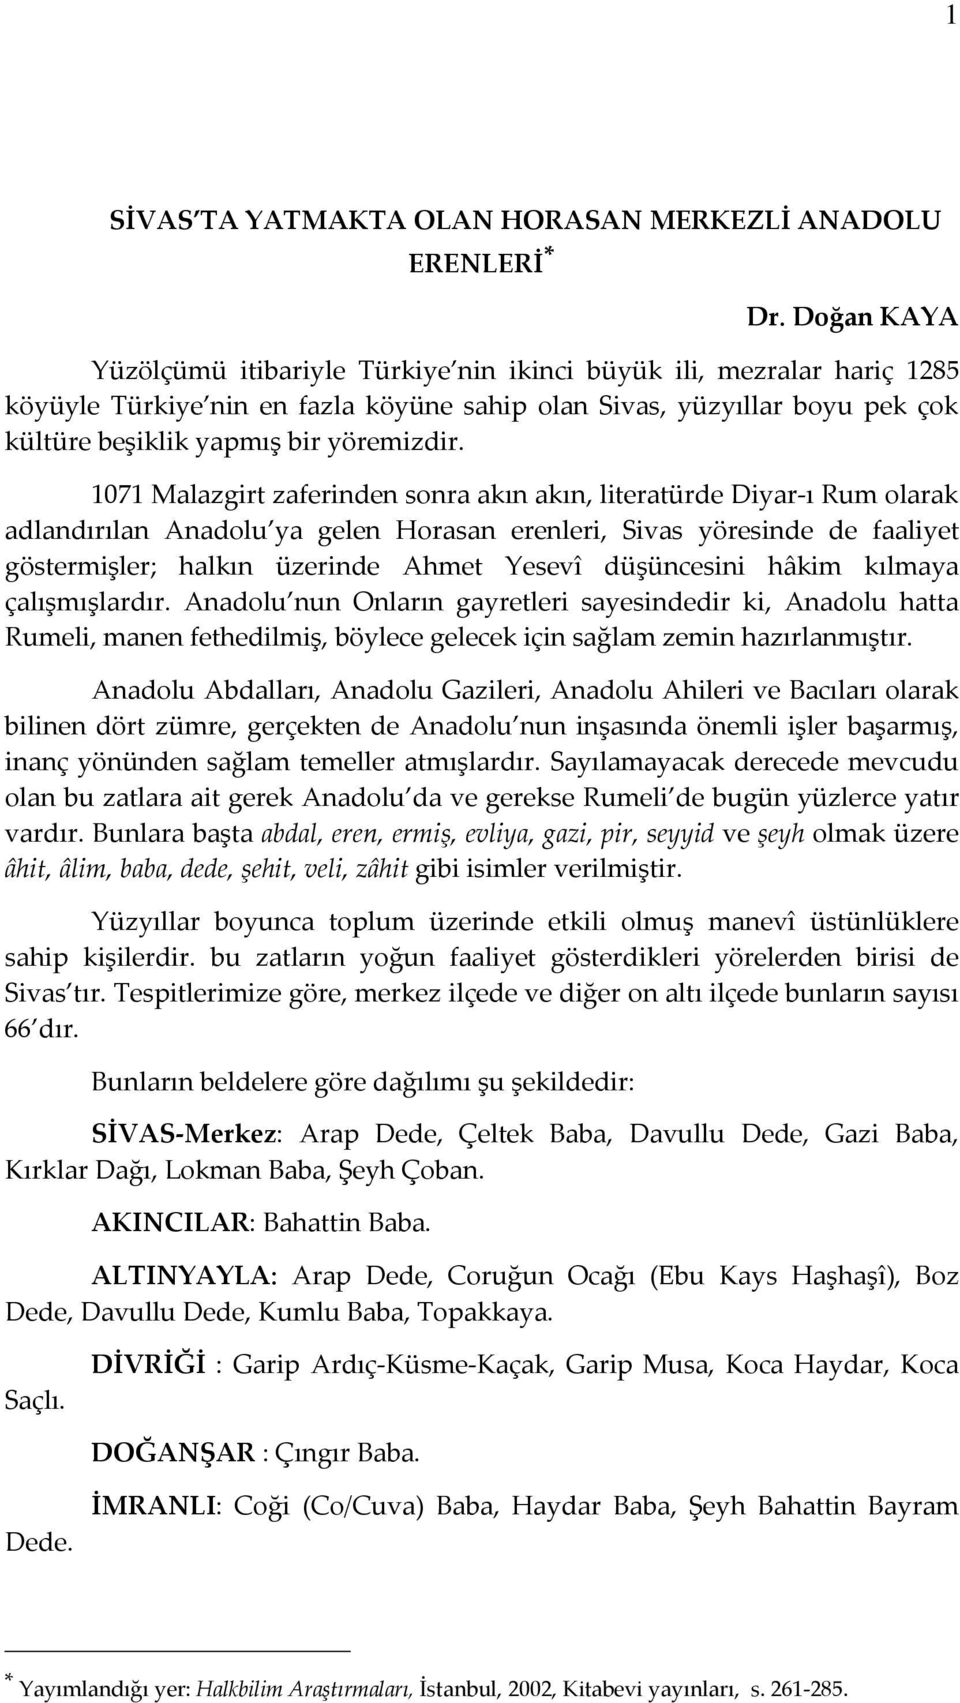 1071 Malazgirt zaferinden sonra akın akın, literatürde Diyar-ı Rum olarak adlandırılan Anadolu ya gelen Horasan erenleri, Sivas yöresinde de faaliyet göstermişler; halkın üzerinde Ahmet Yesevî